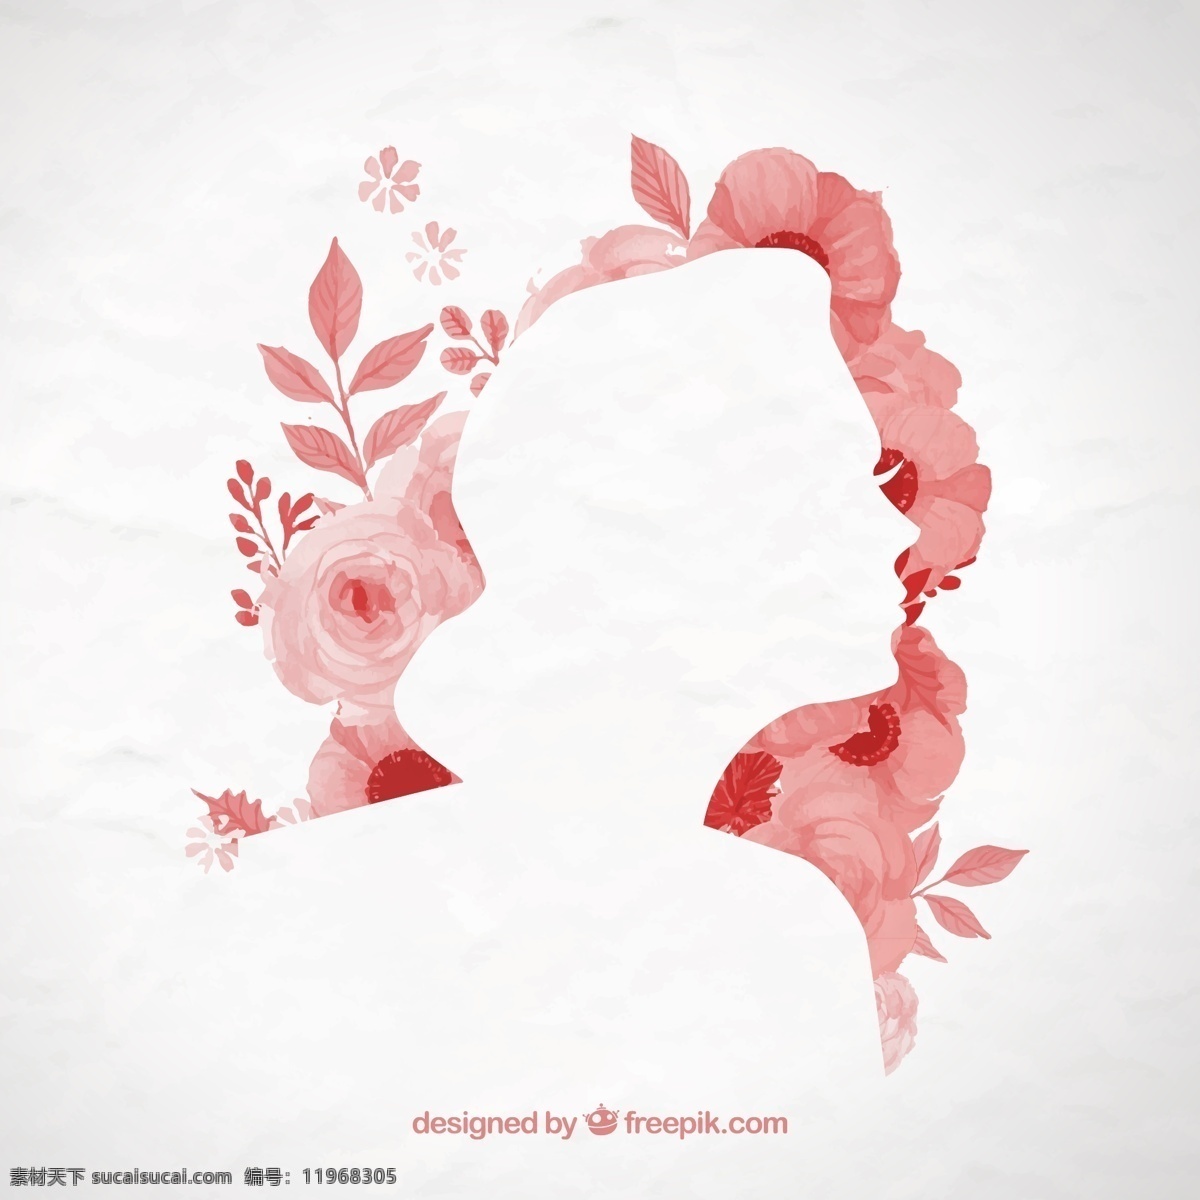 水彩 花卉 女子 剪影 花朵 花枝 植物 女性 女生 女士 女孩 人物 侧脸 纸张 褶皱 插画 背景 海报 画册 矢量植物 生物世界 花草 白色